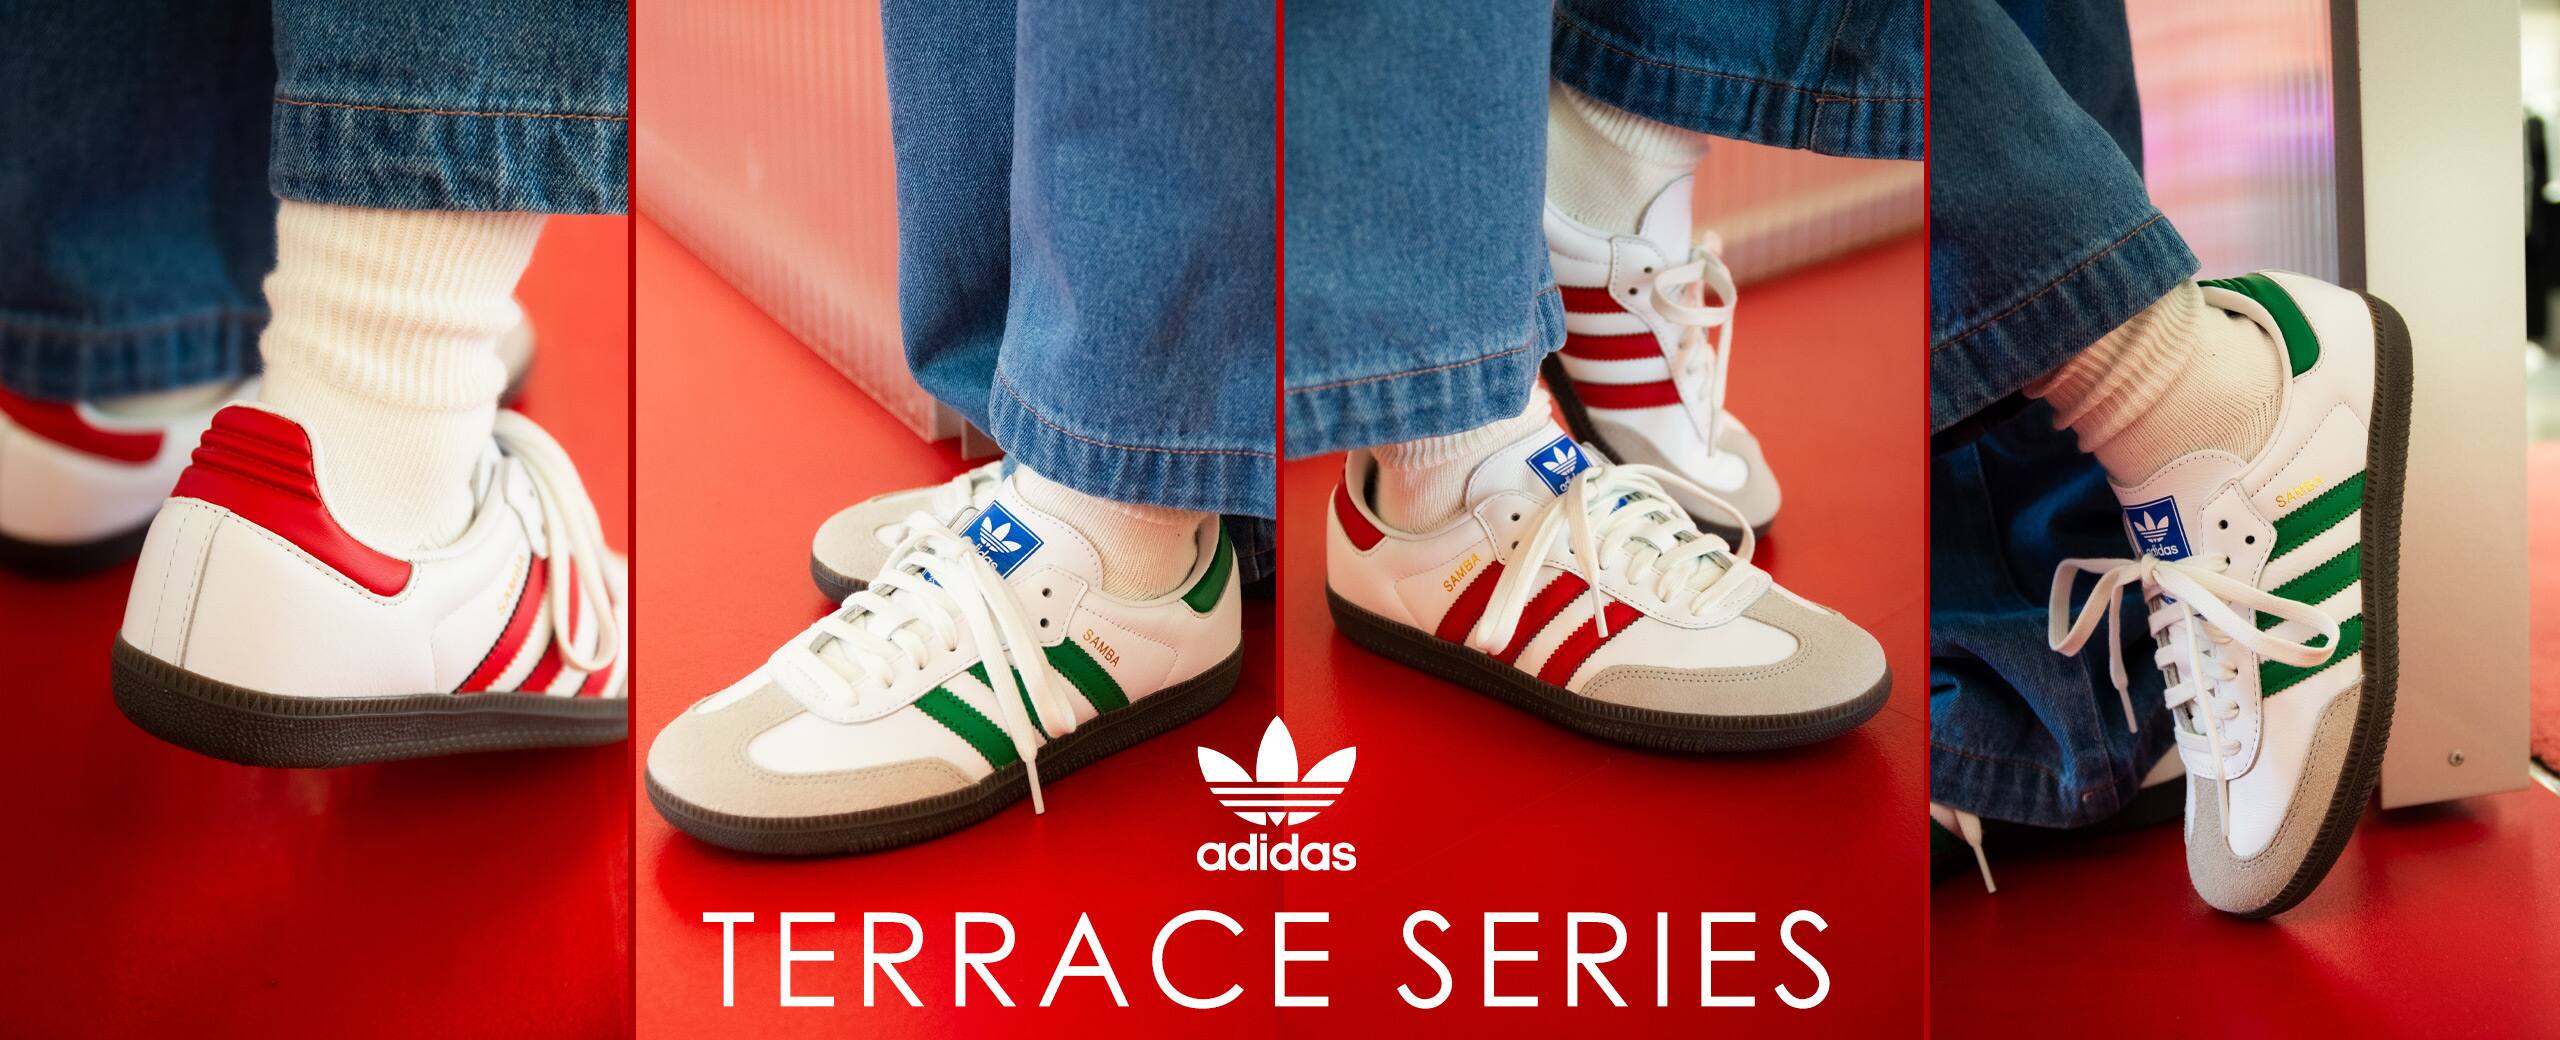 adidas Originals Terrace Series